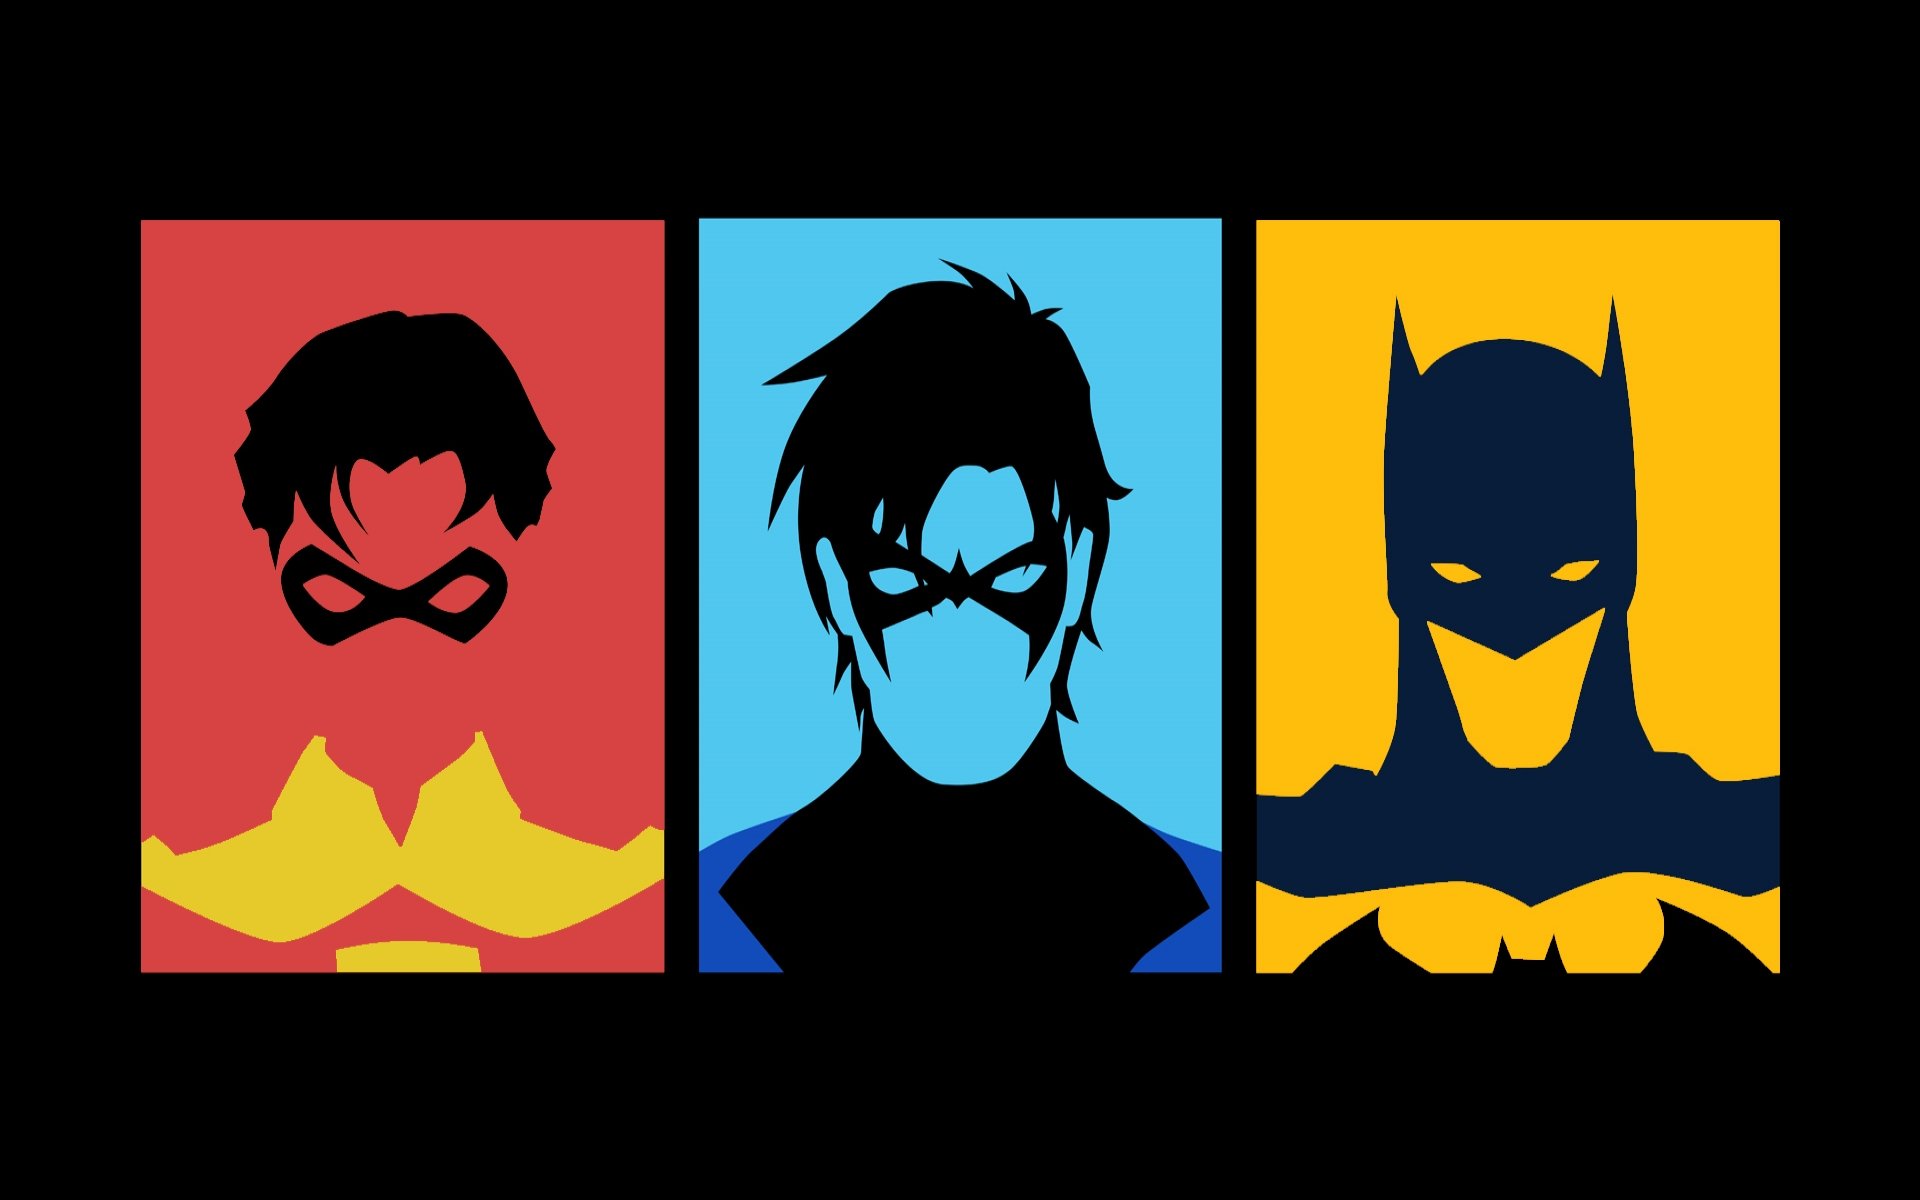 dc comics, Superhero, Hero, D c, Comics, Warrior, Batman Wallpaper